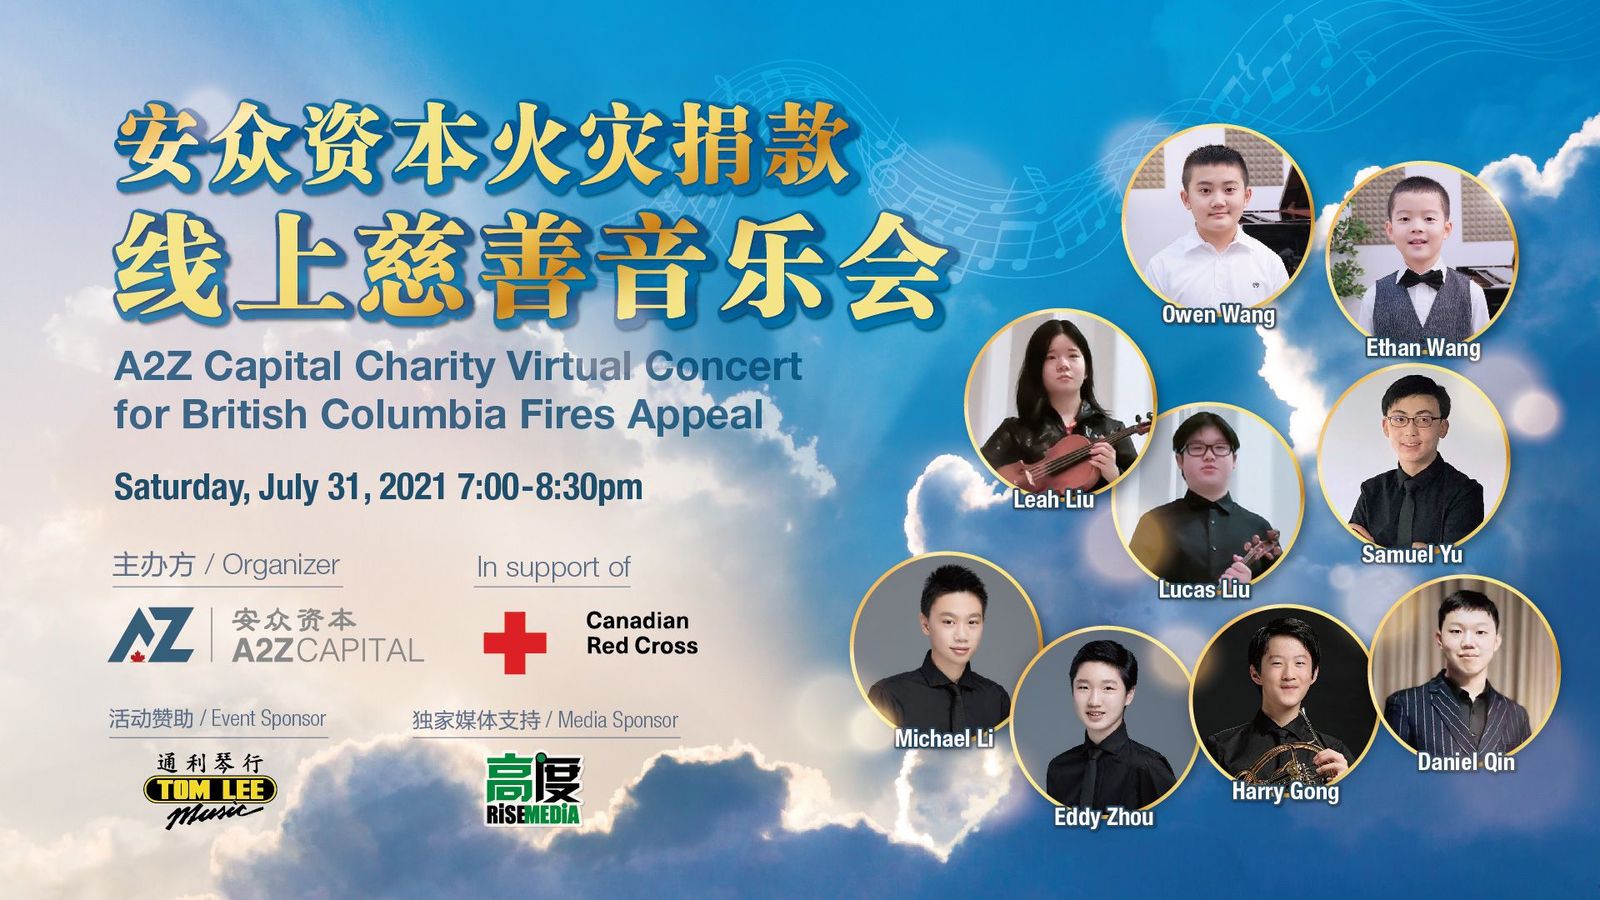 卑诗有难，华人有爱：安众资本火灾捐款线上慈善音乐会7月31日举办